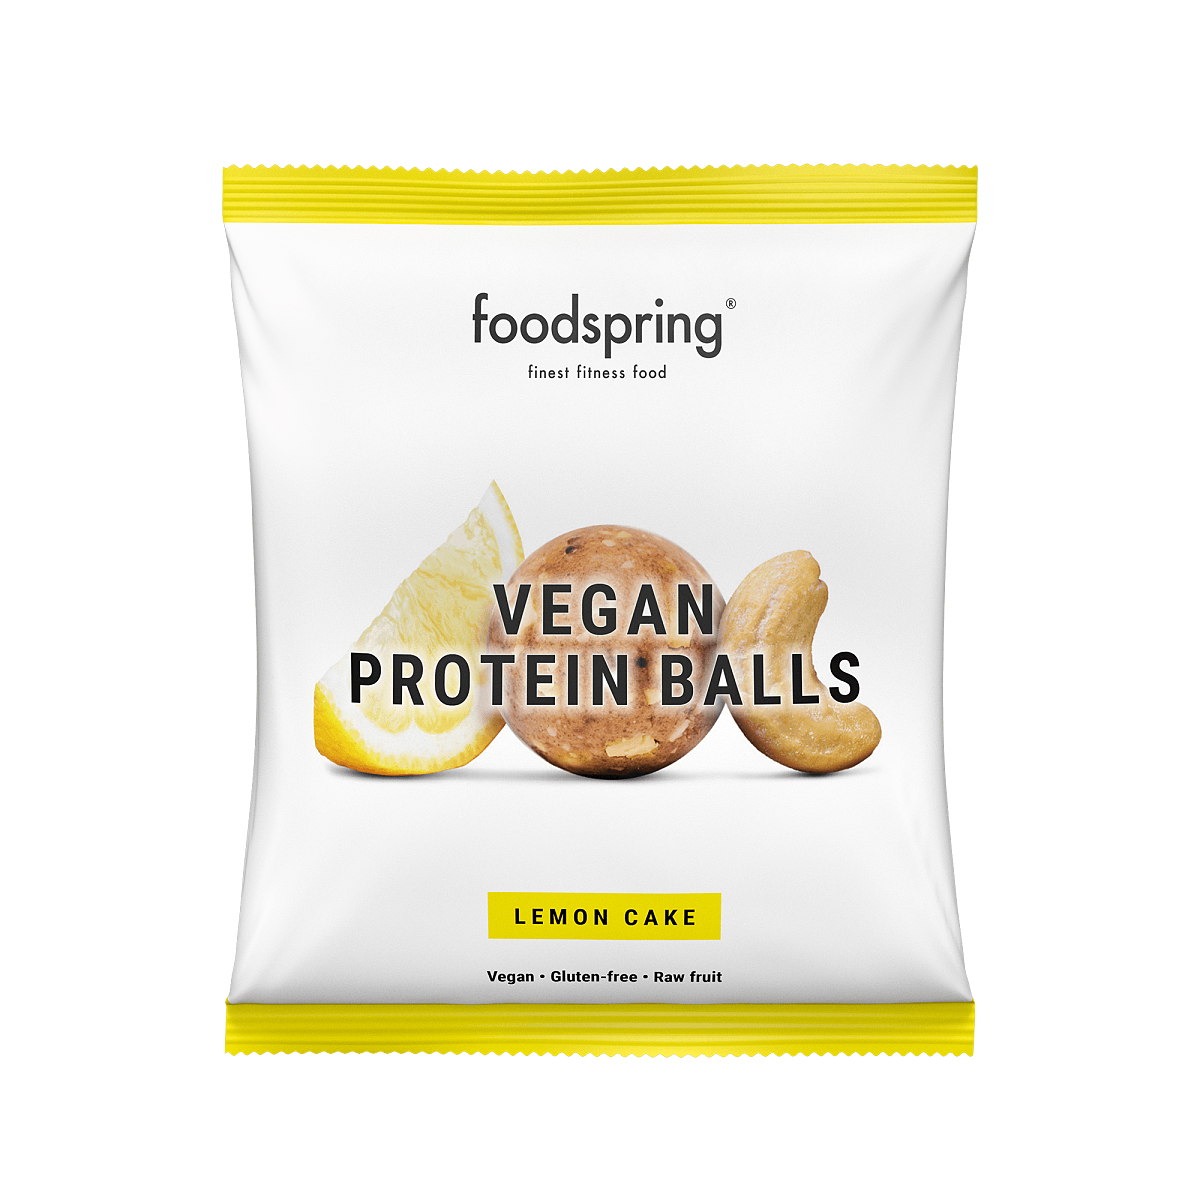 foodspring_Vegan Protein Balls_Lemon Cake_Eur 1,99